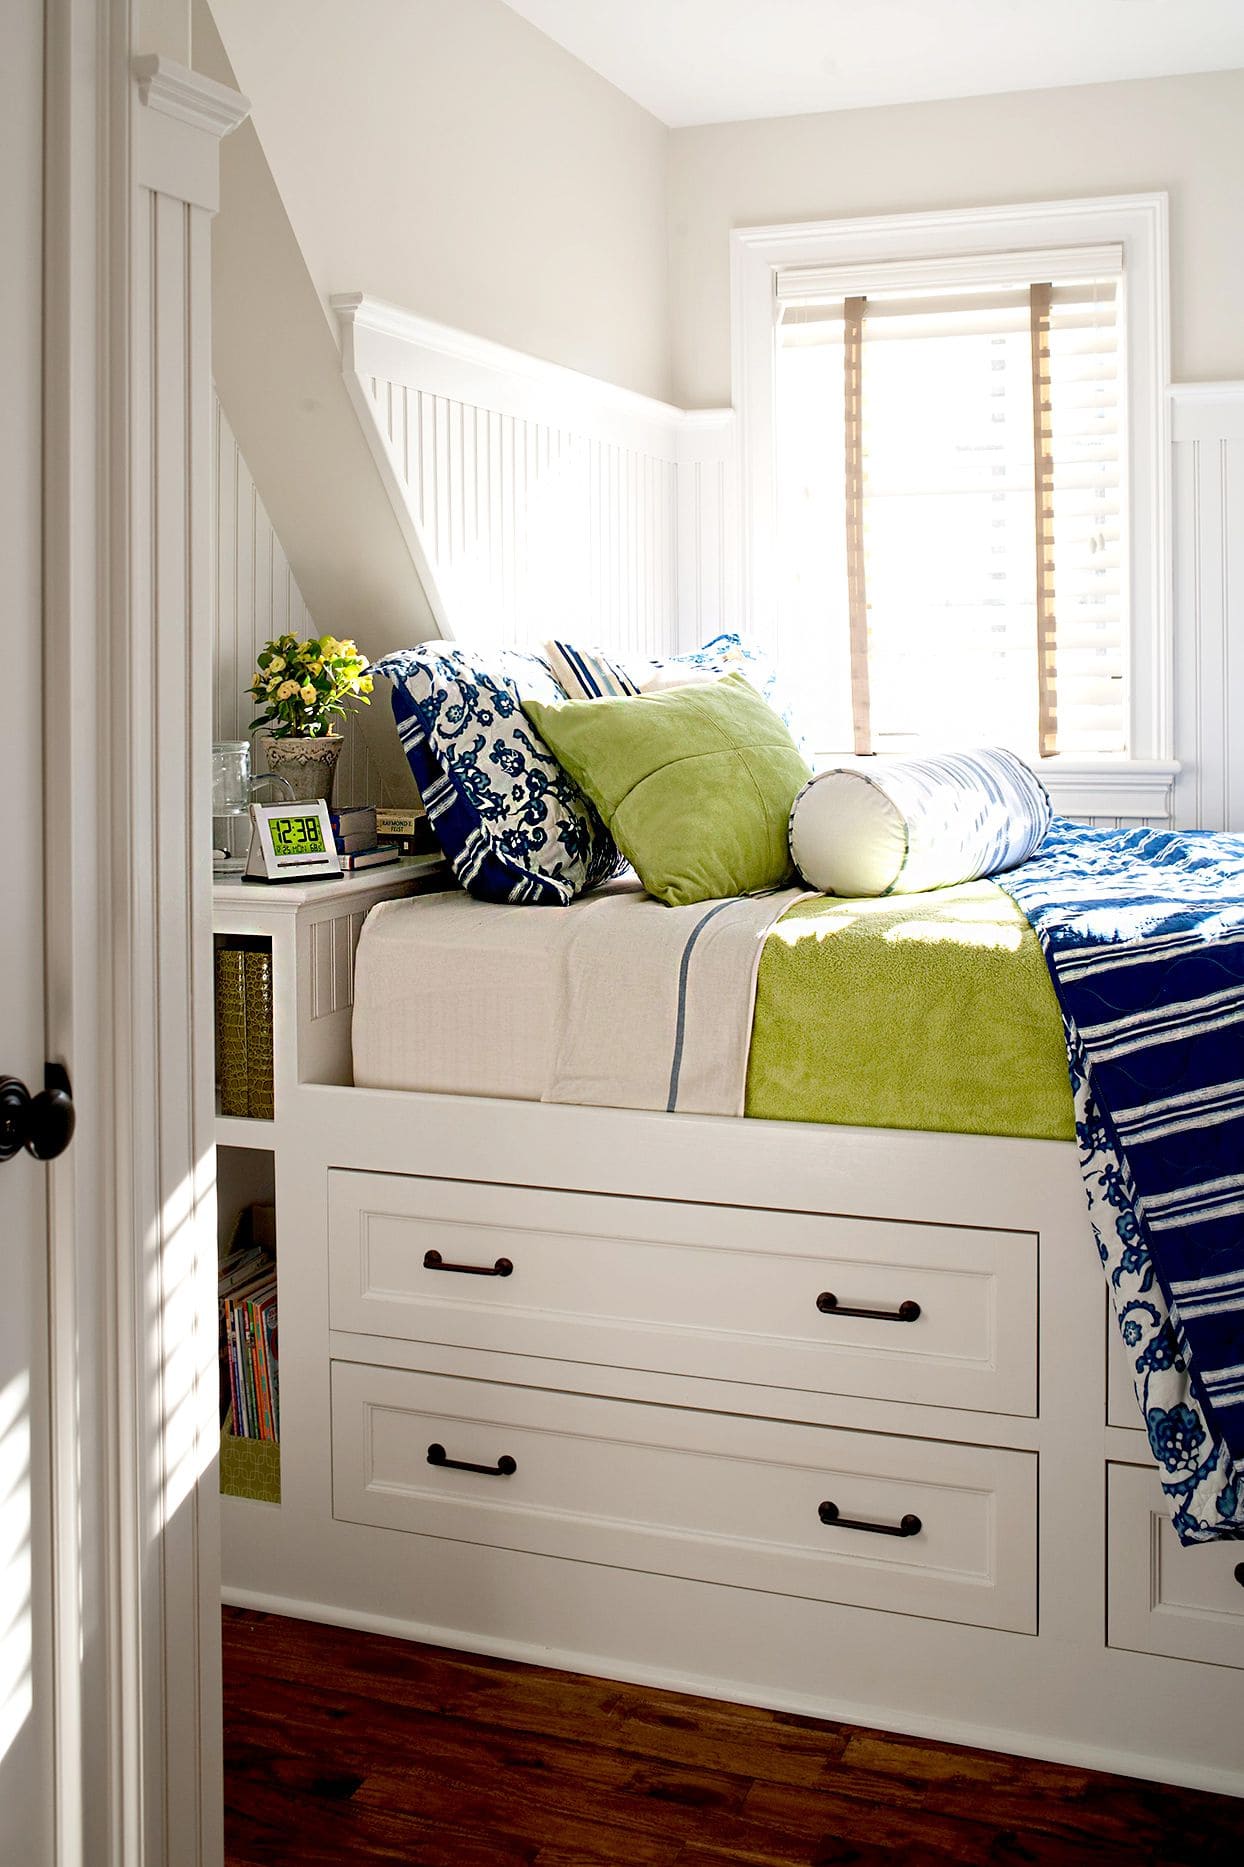 Lựa chọn chăn ga gối có màu sắc tương cho phòng ngủ nhỏ